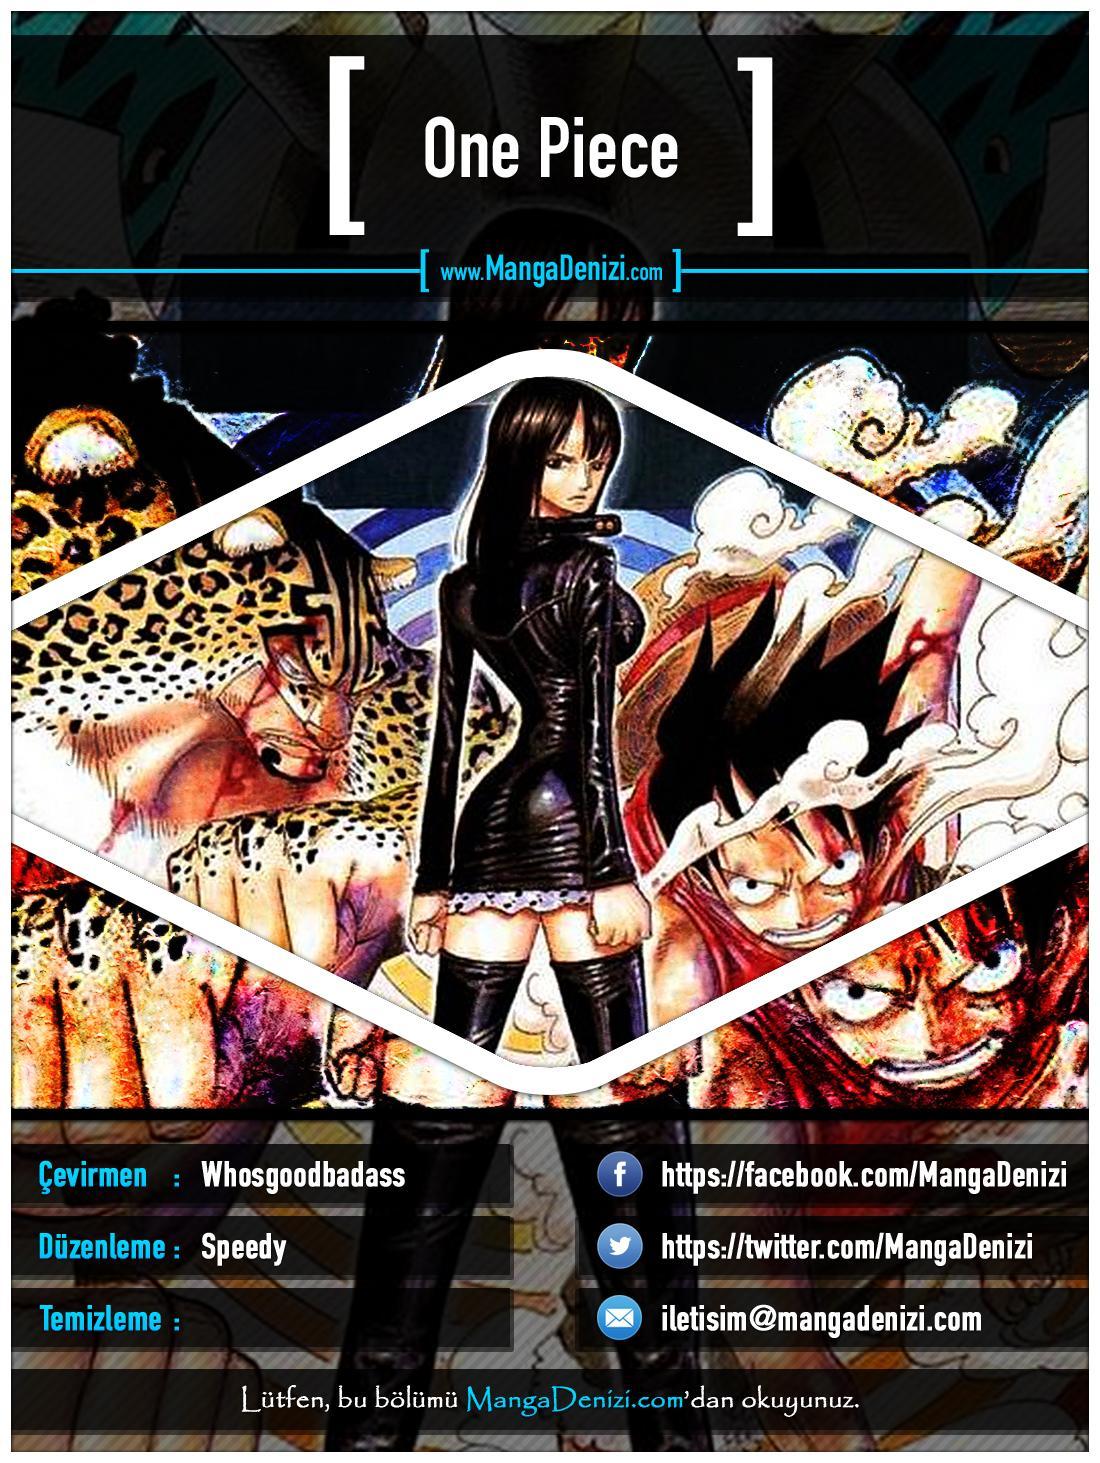 One Piece [Renkli] mangasının 0336 bölümünün 1. sayfasını okuyorsunuz.